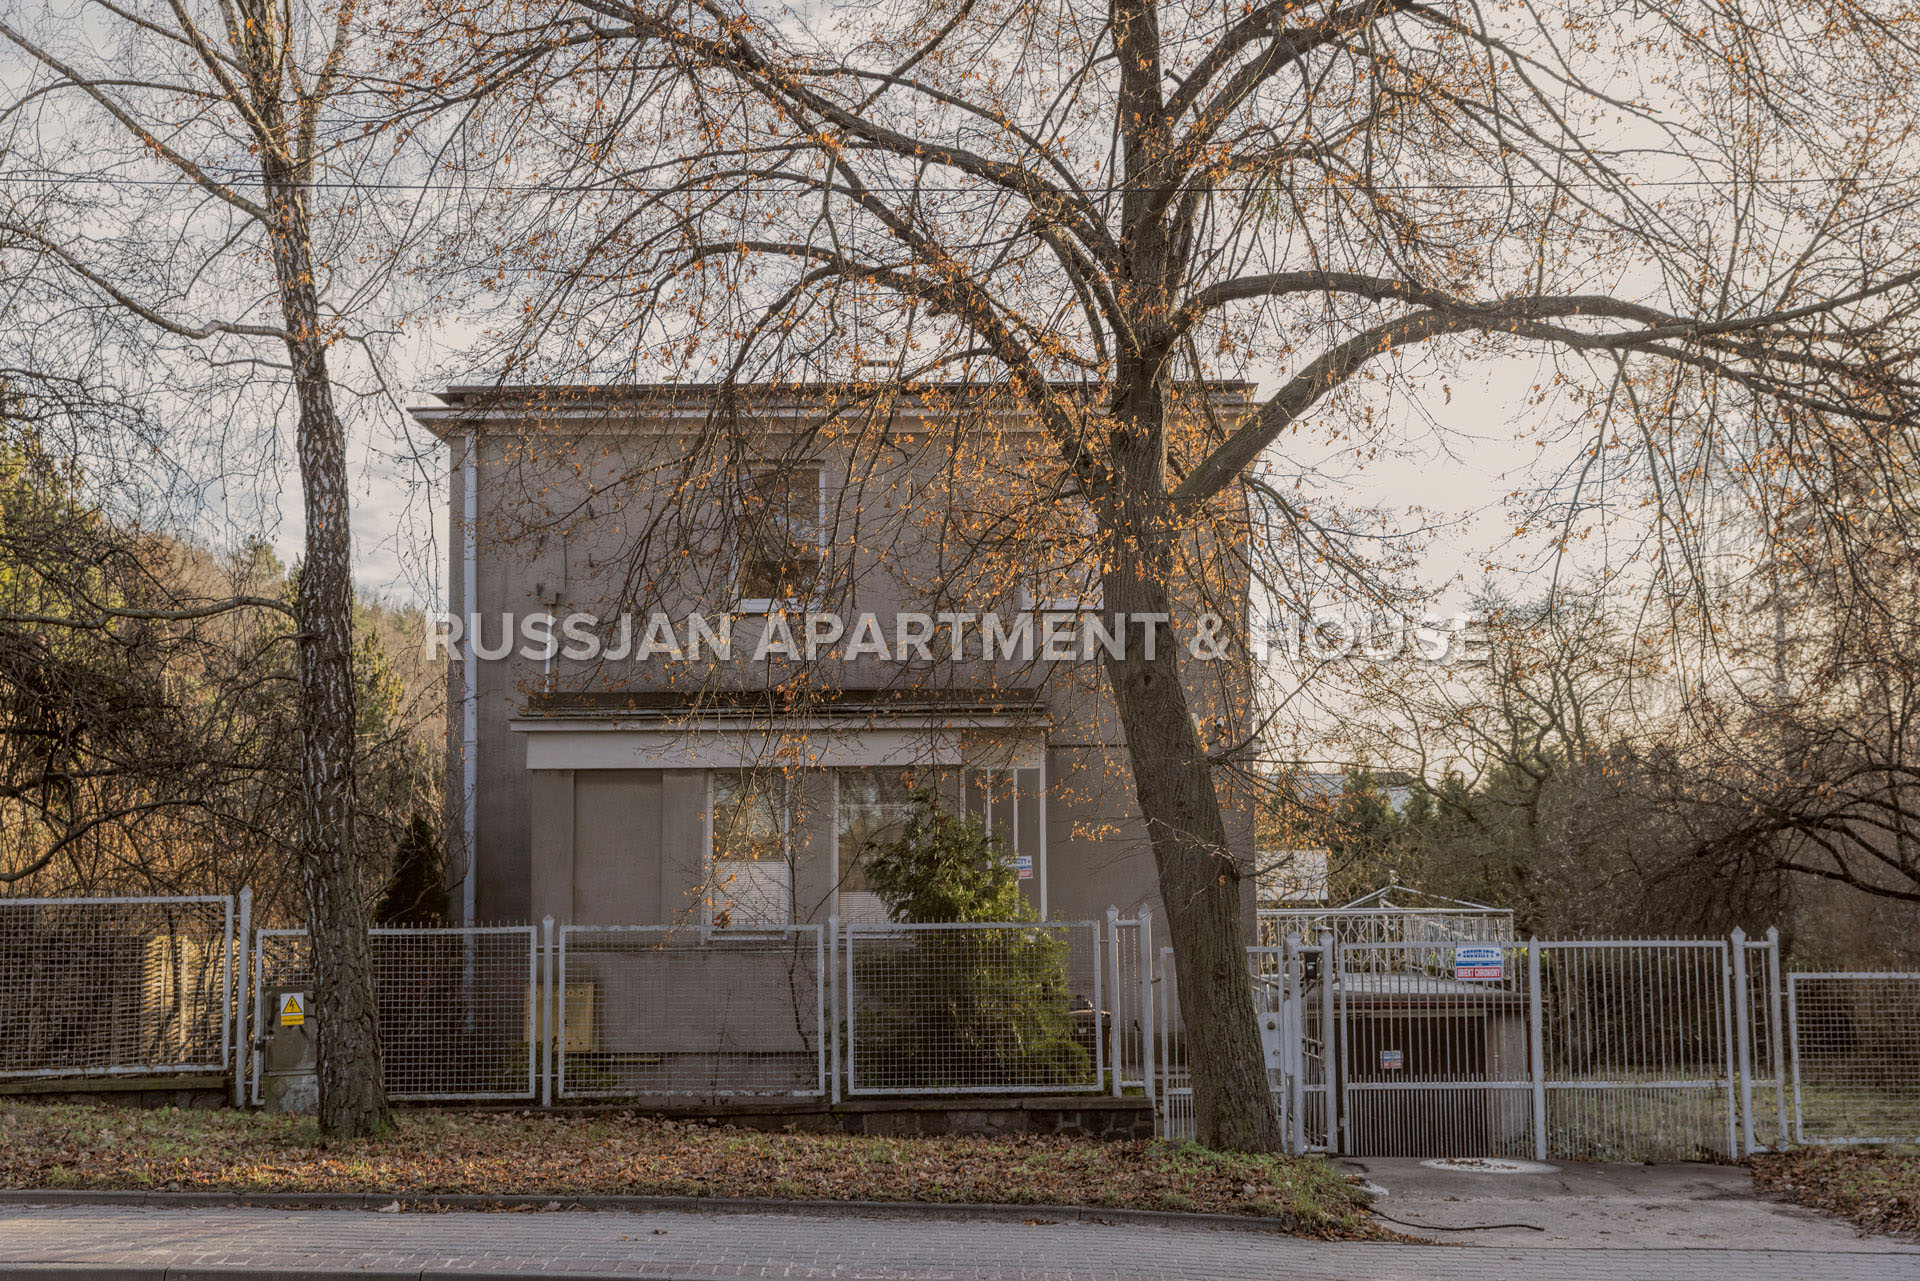 House/plot Gdynia Orlowo Ulica Powstania Styczniowego  | RUSSJAN Apartment & House